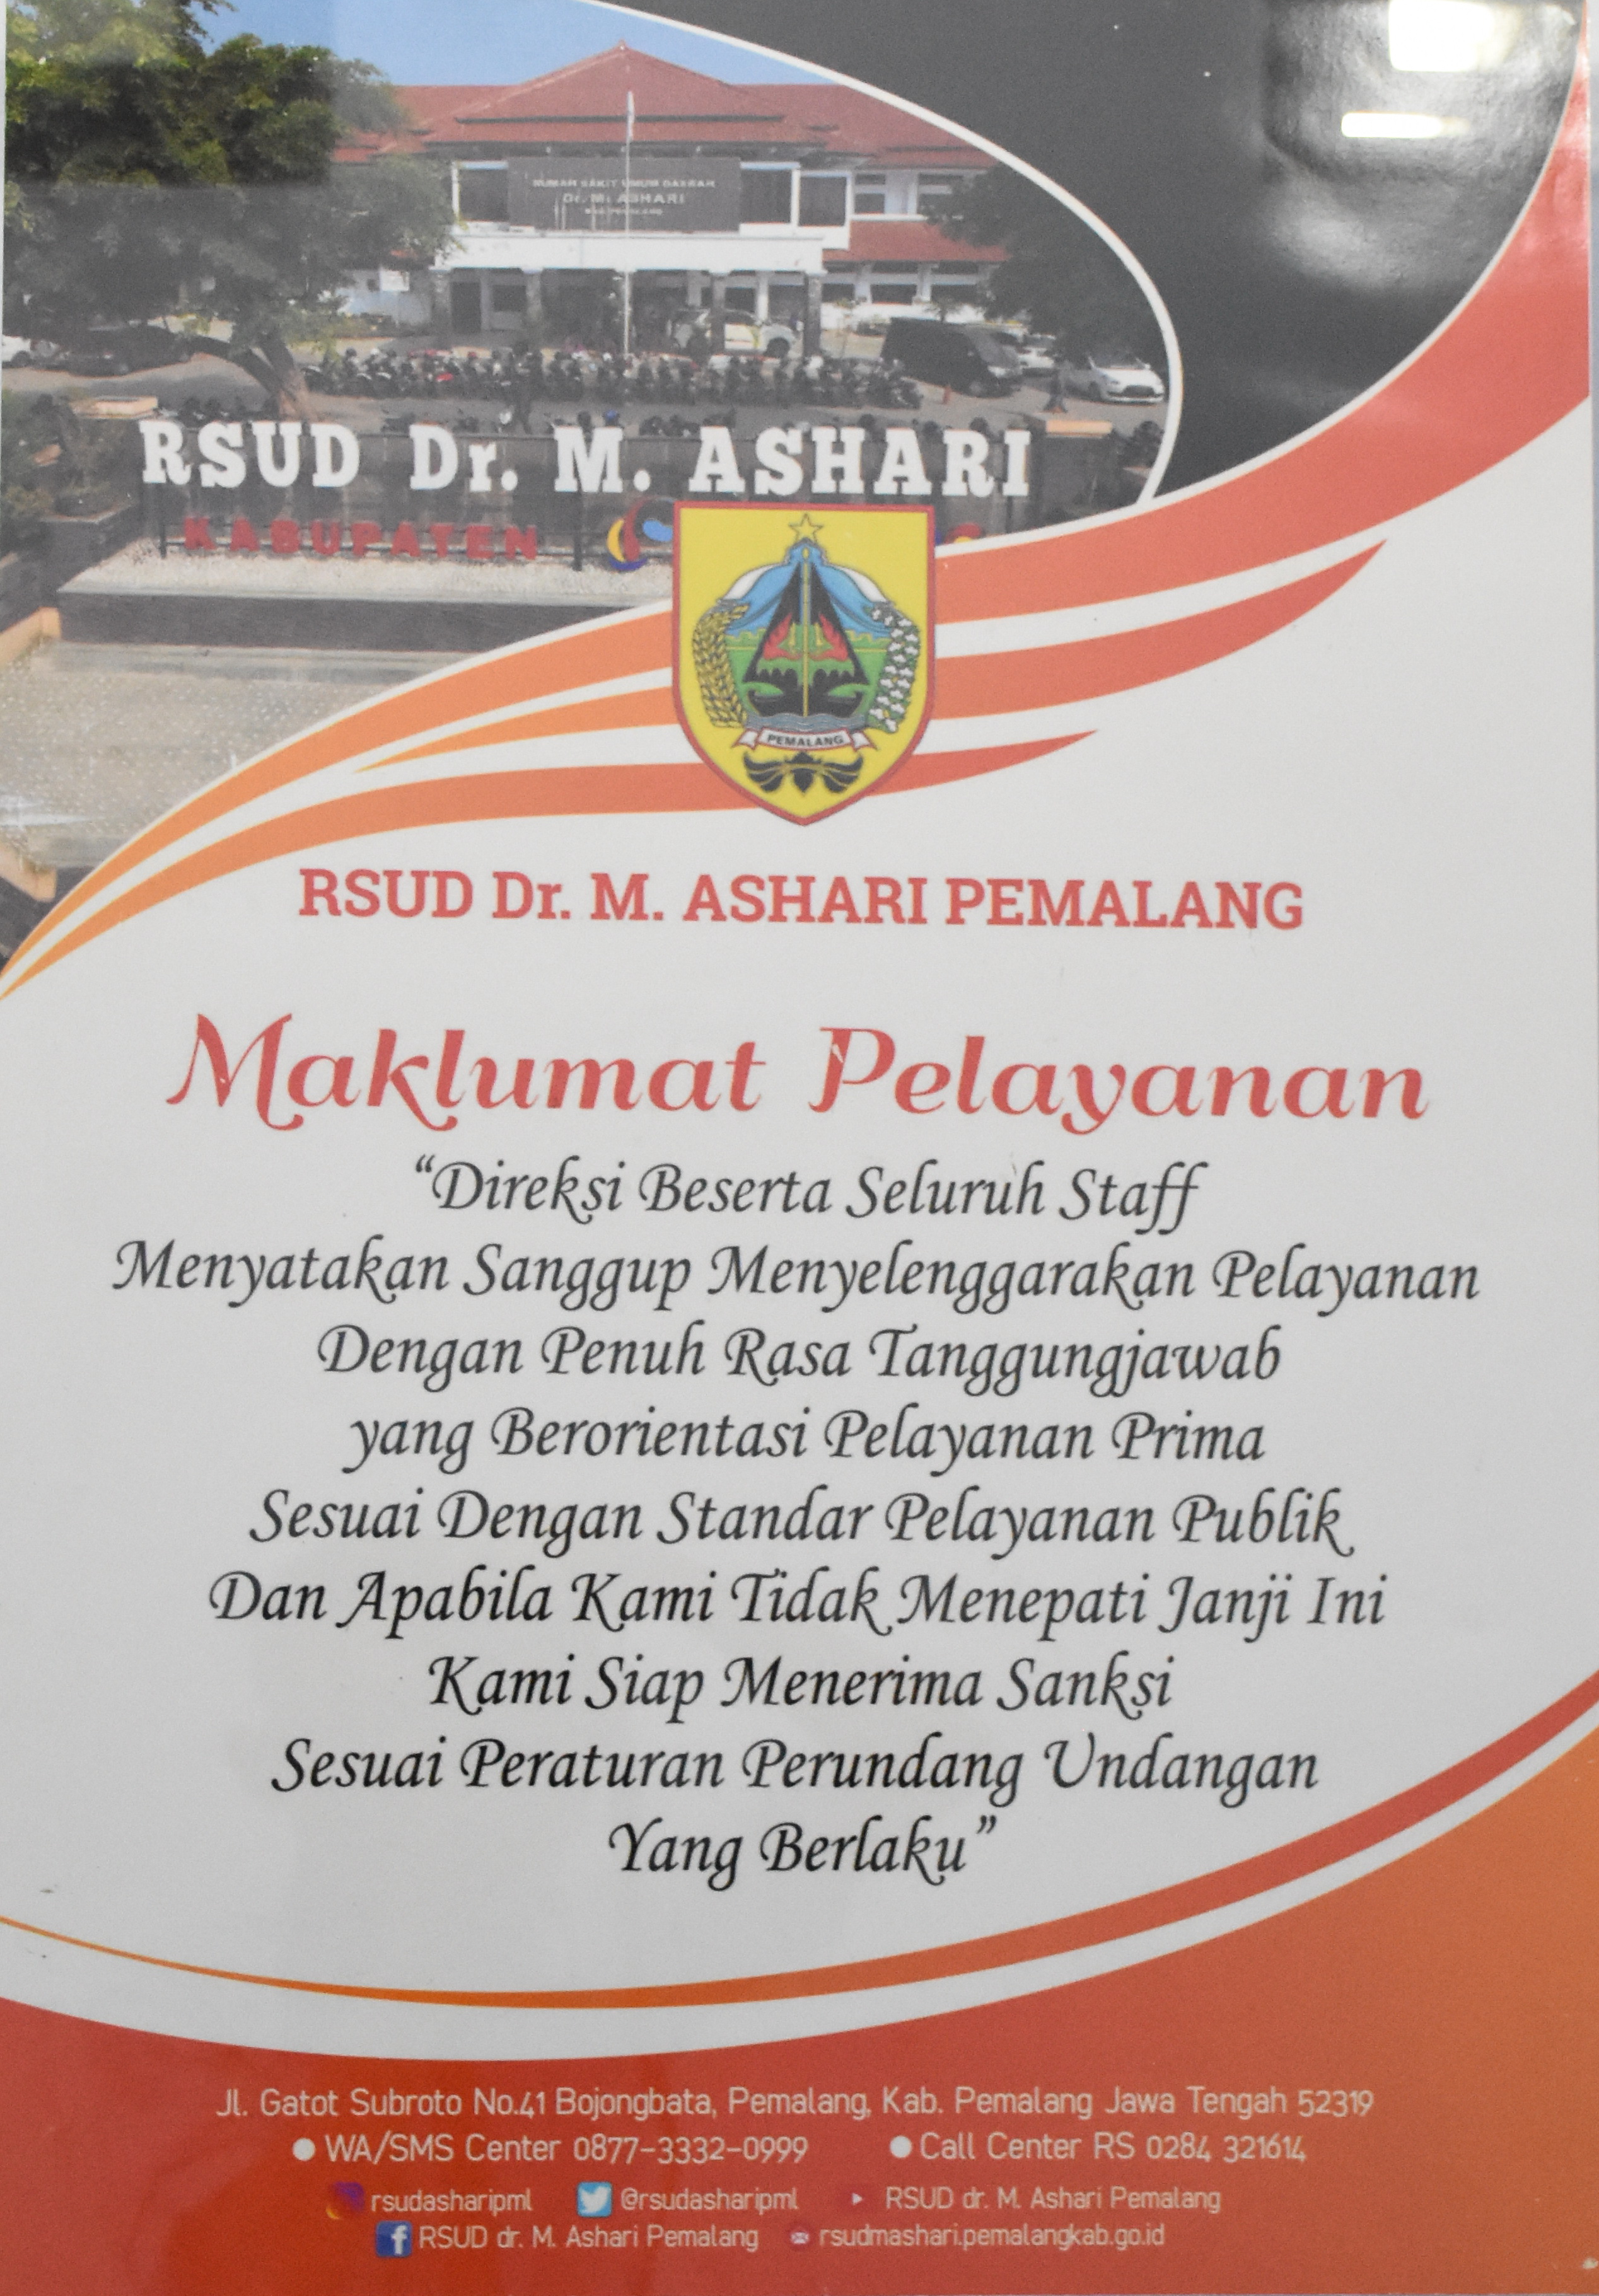 Maklumat Pelayanan RSUD dr. M. Ashari Pemalang